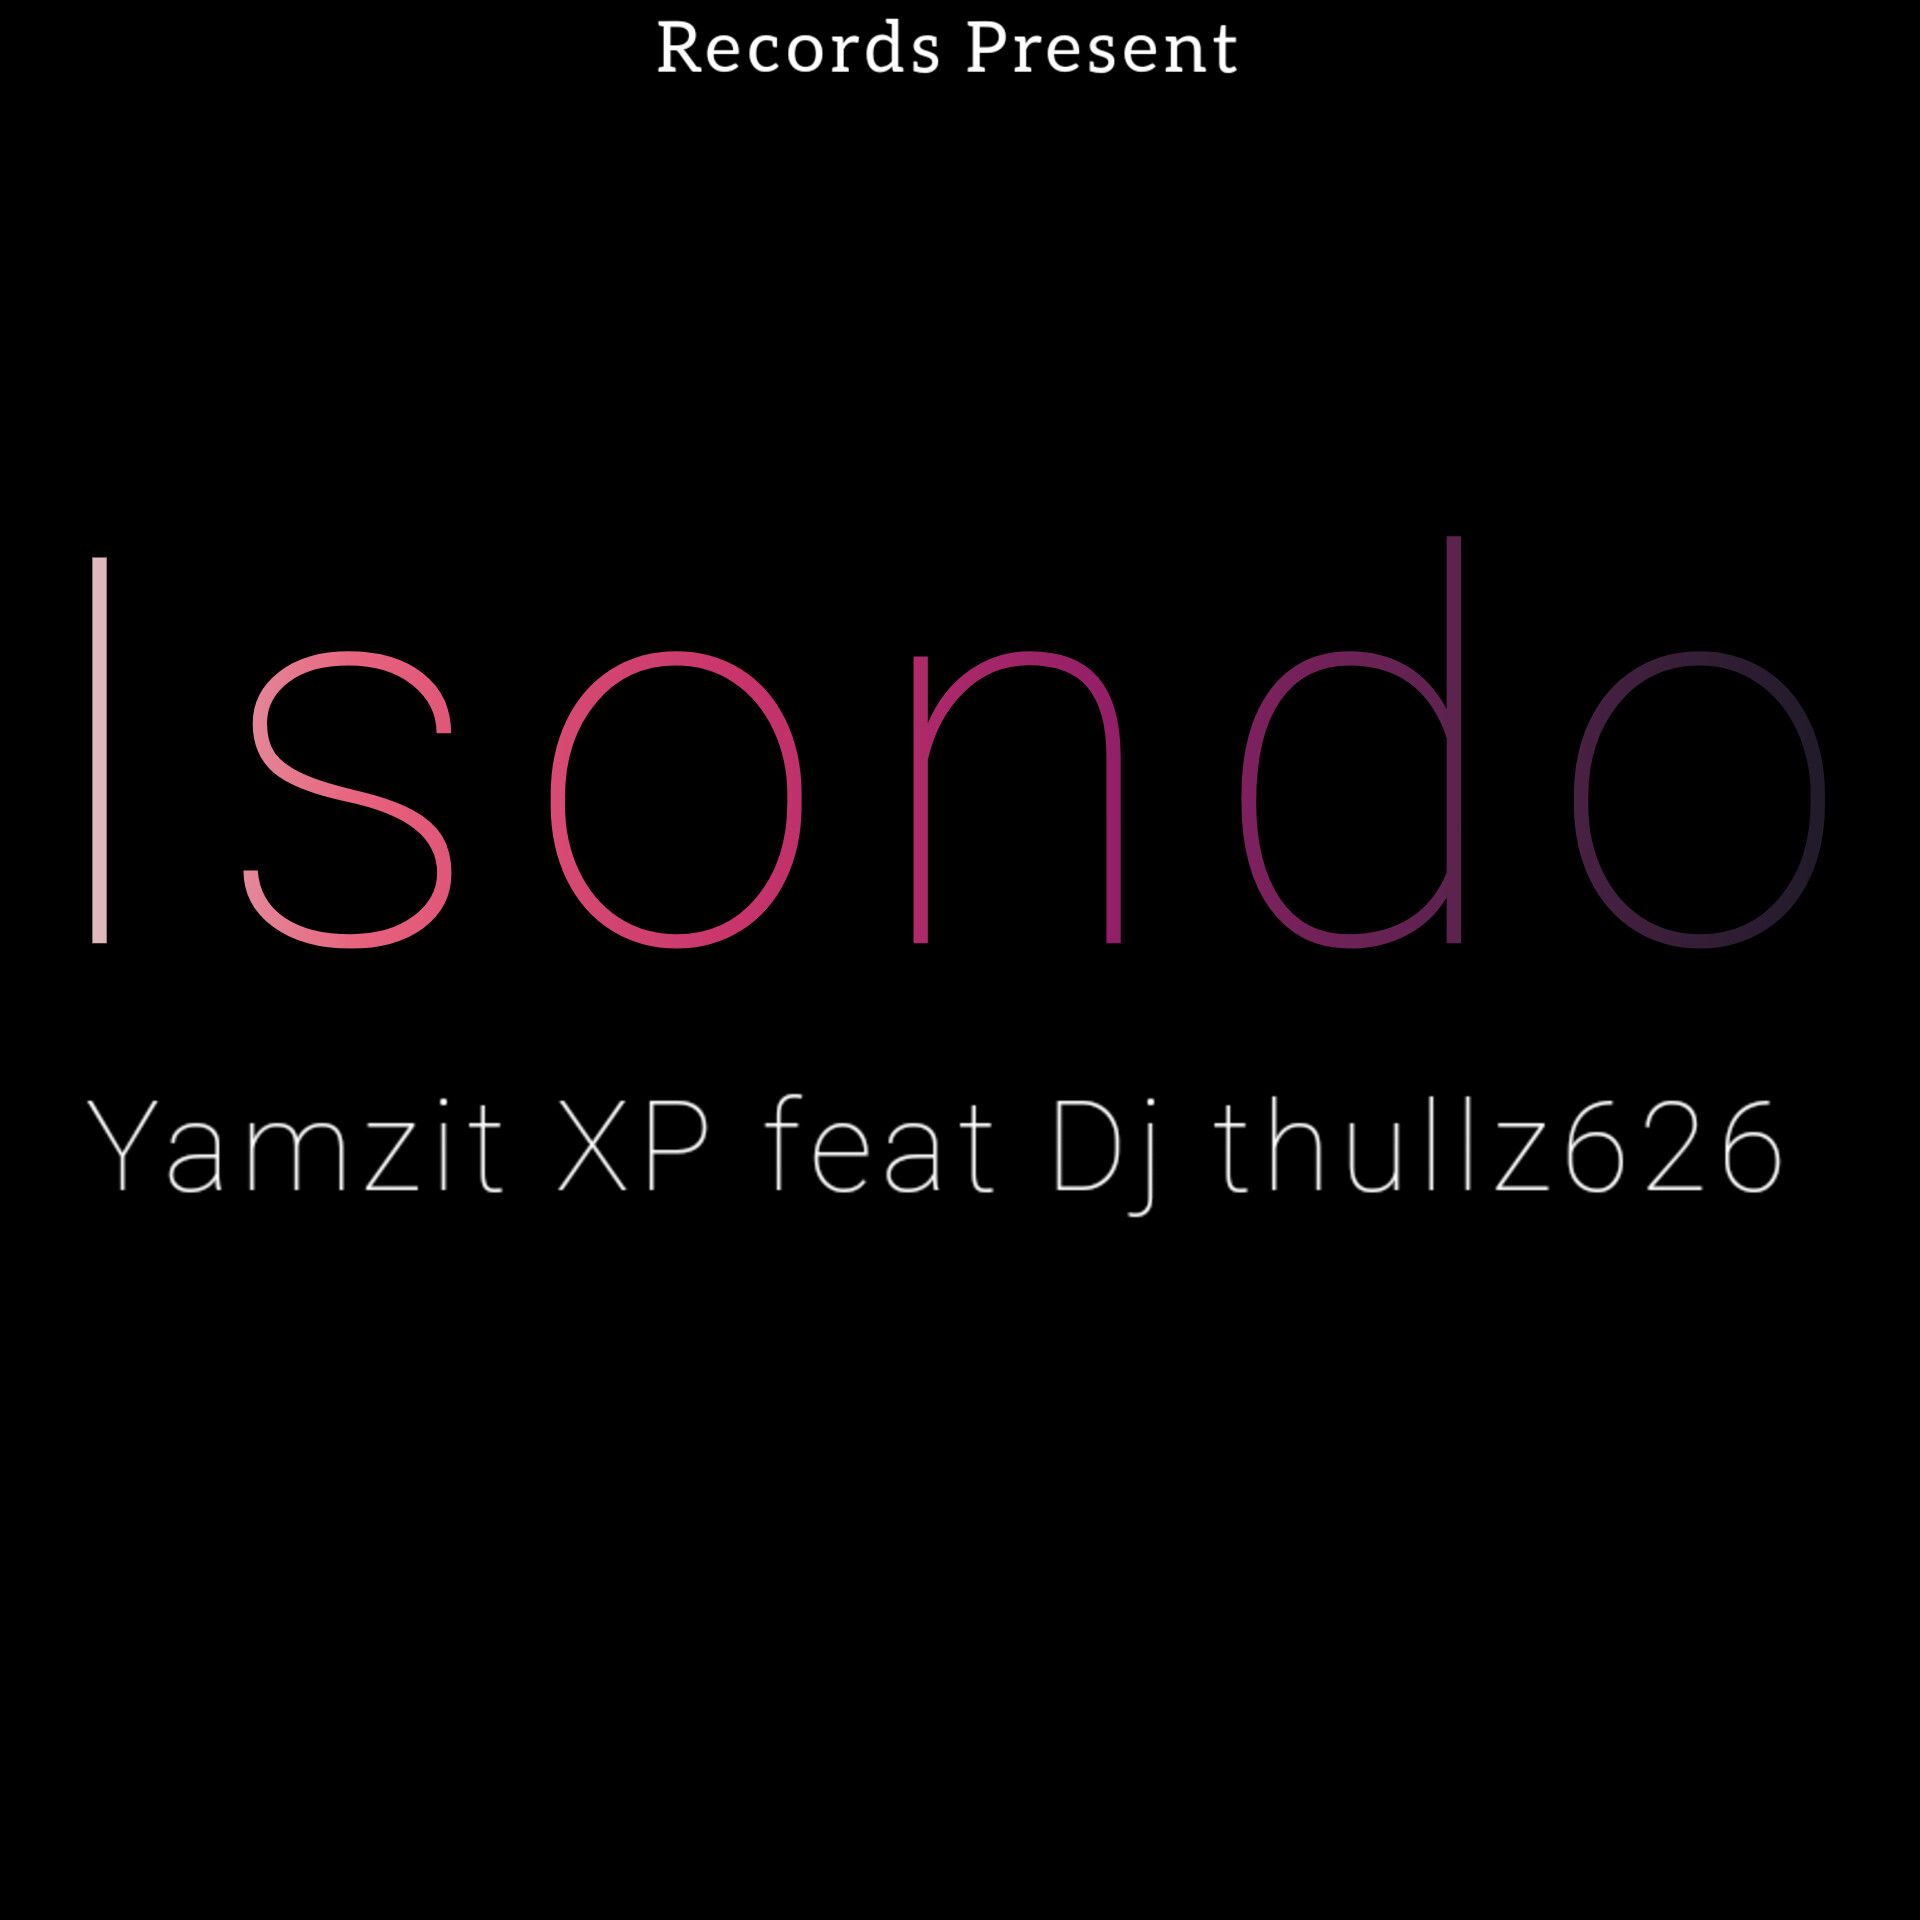 Isondo - Yamza Xp Feat Dj thullz626